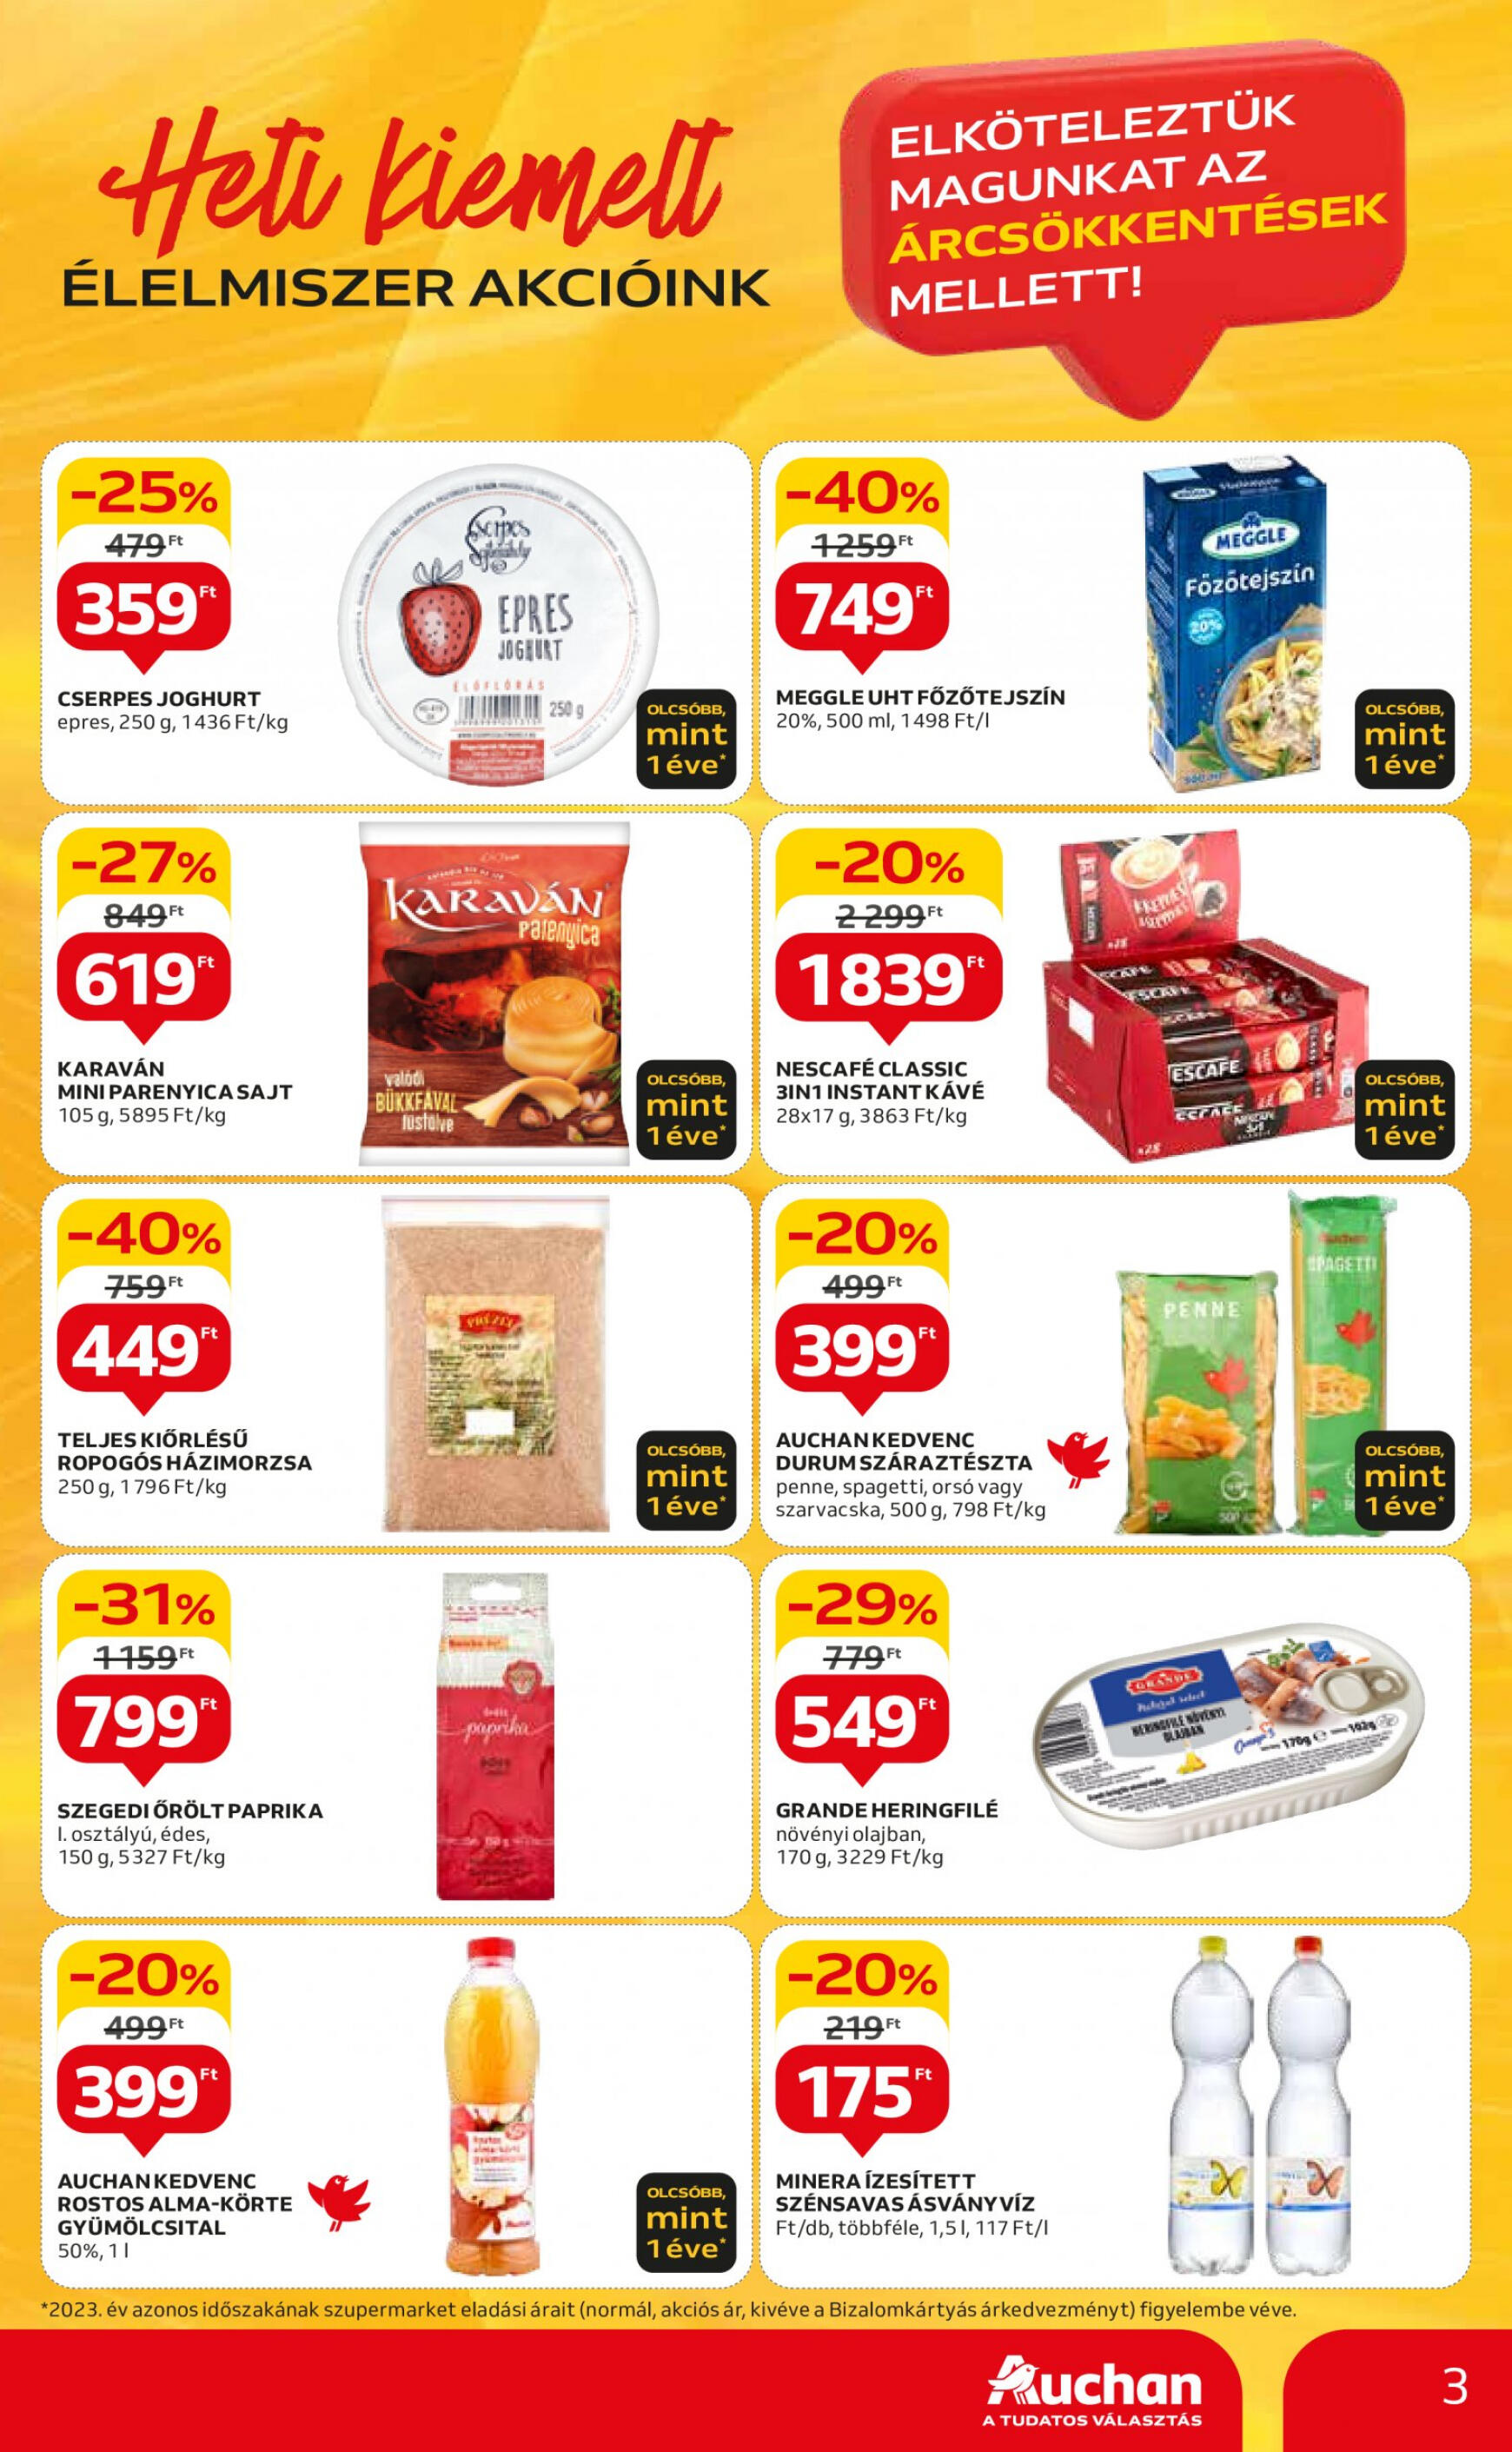 auchan - Aktuális újság Auchan szupermarket 04.25. - 05.30. - page: 3